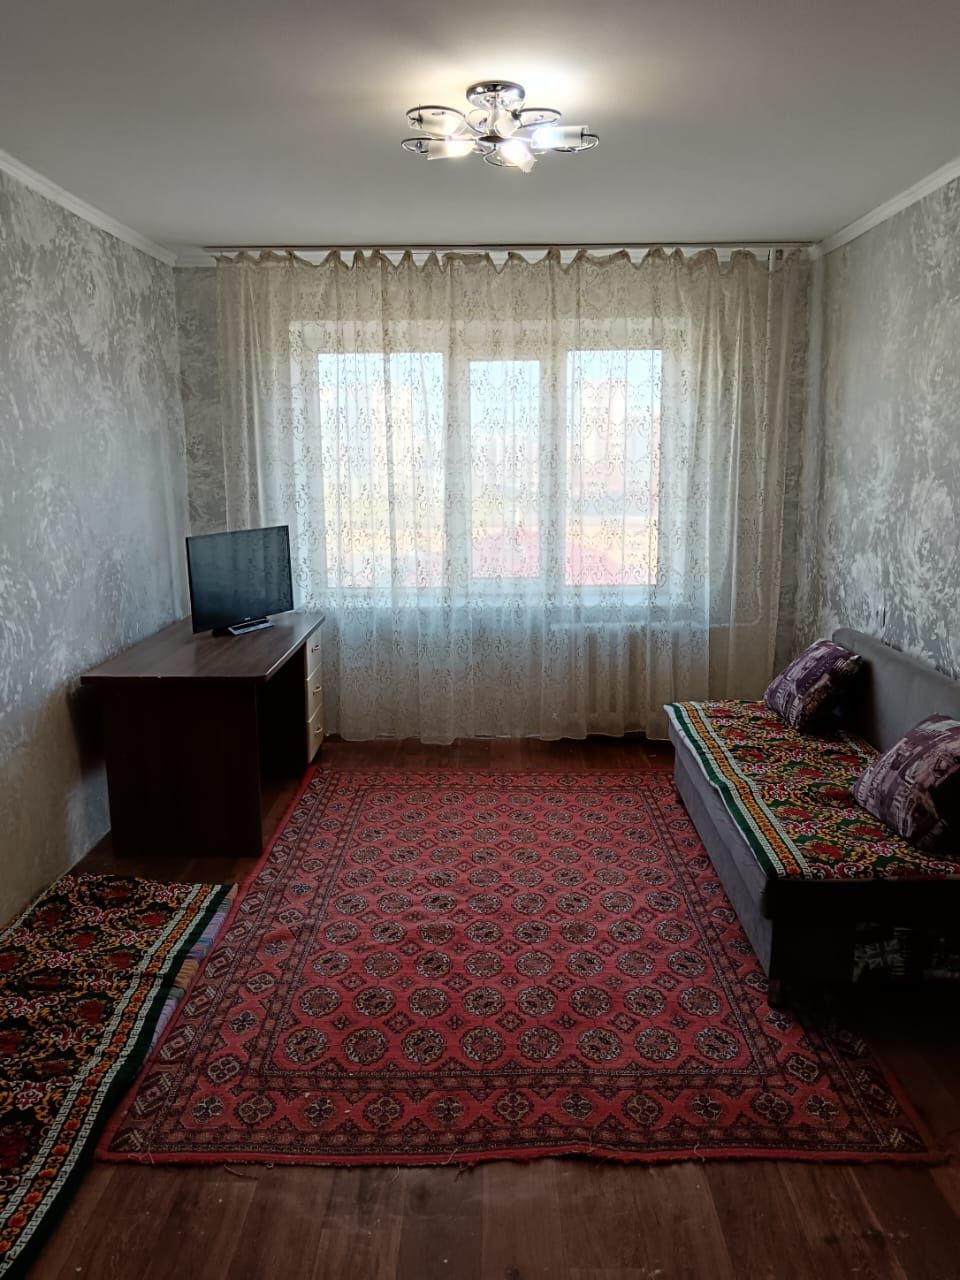 Продается 2 комнатная квартира на районе Евразии